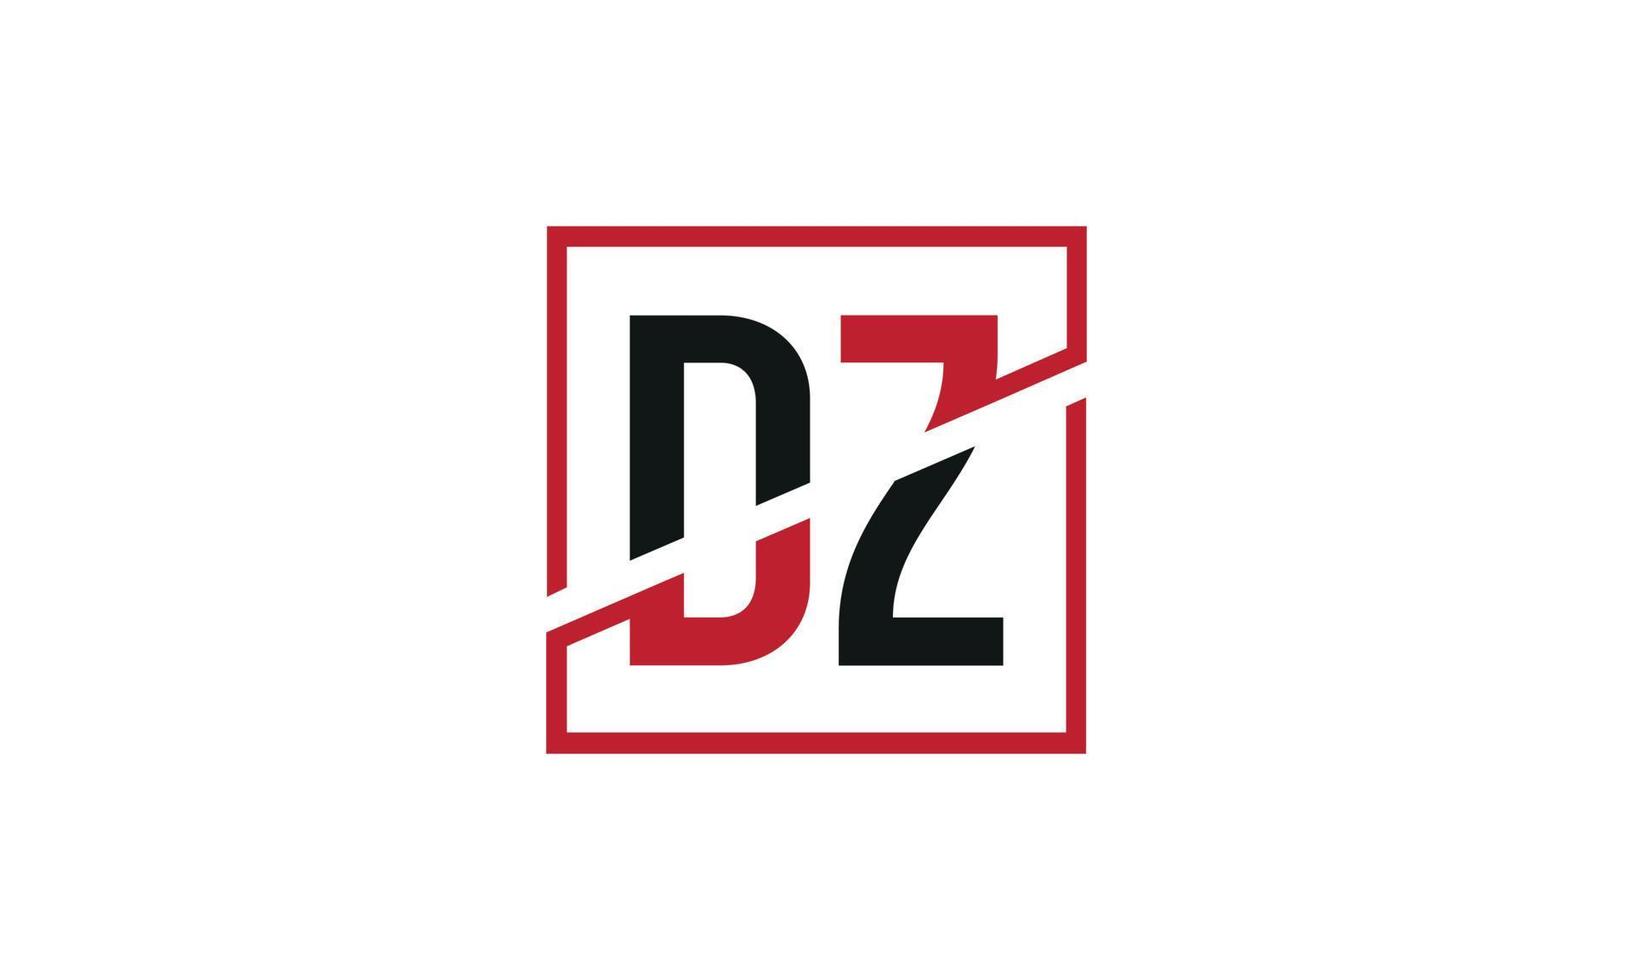 création de logo dz. conception initiale du monogramme du logo de la lettre dz en noir et rouge avec une forme carrée. vecteur pro